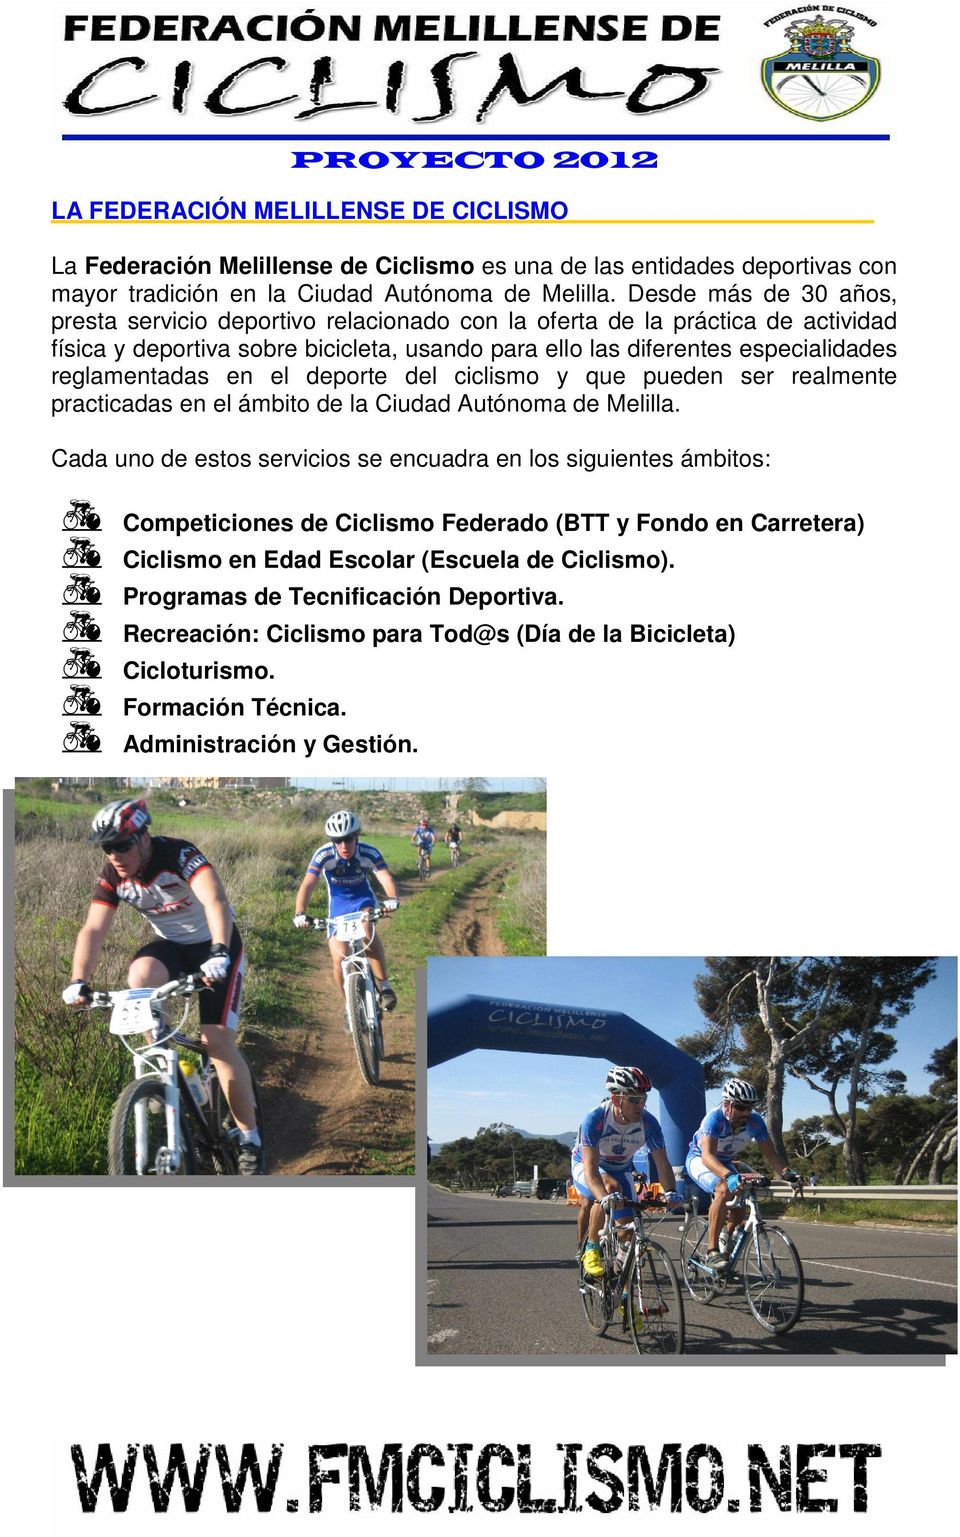 en el deporte del ciclismo y que pueden ser realmente practicadas en el ámbito de la Ciudad Autónoma de Melilla.